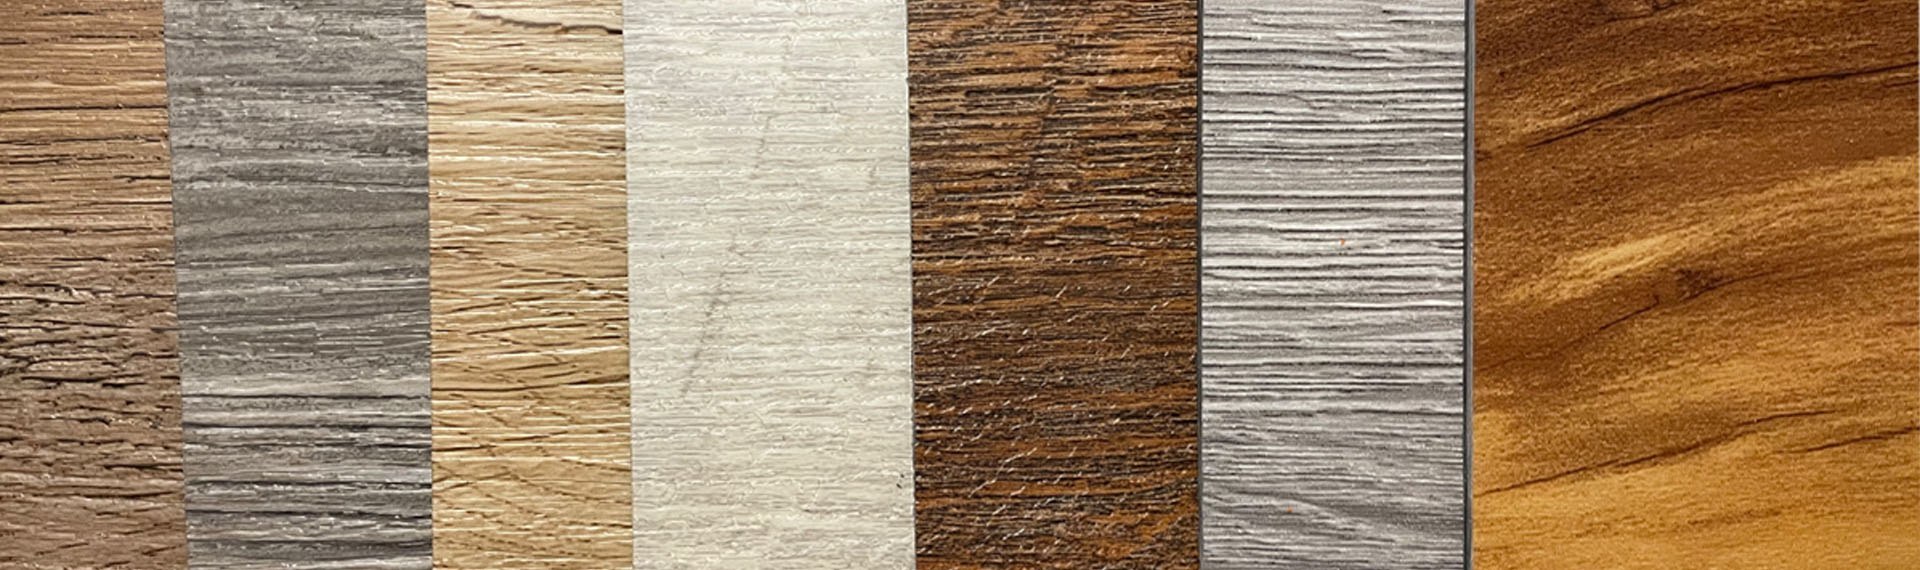 3 nuevas tendencias en pisos de madera: colores oscuros, claros y vibrantes.